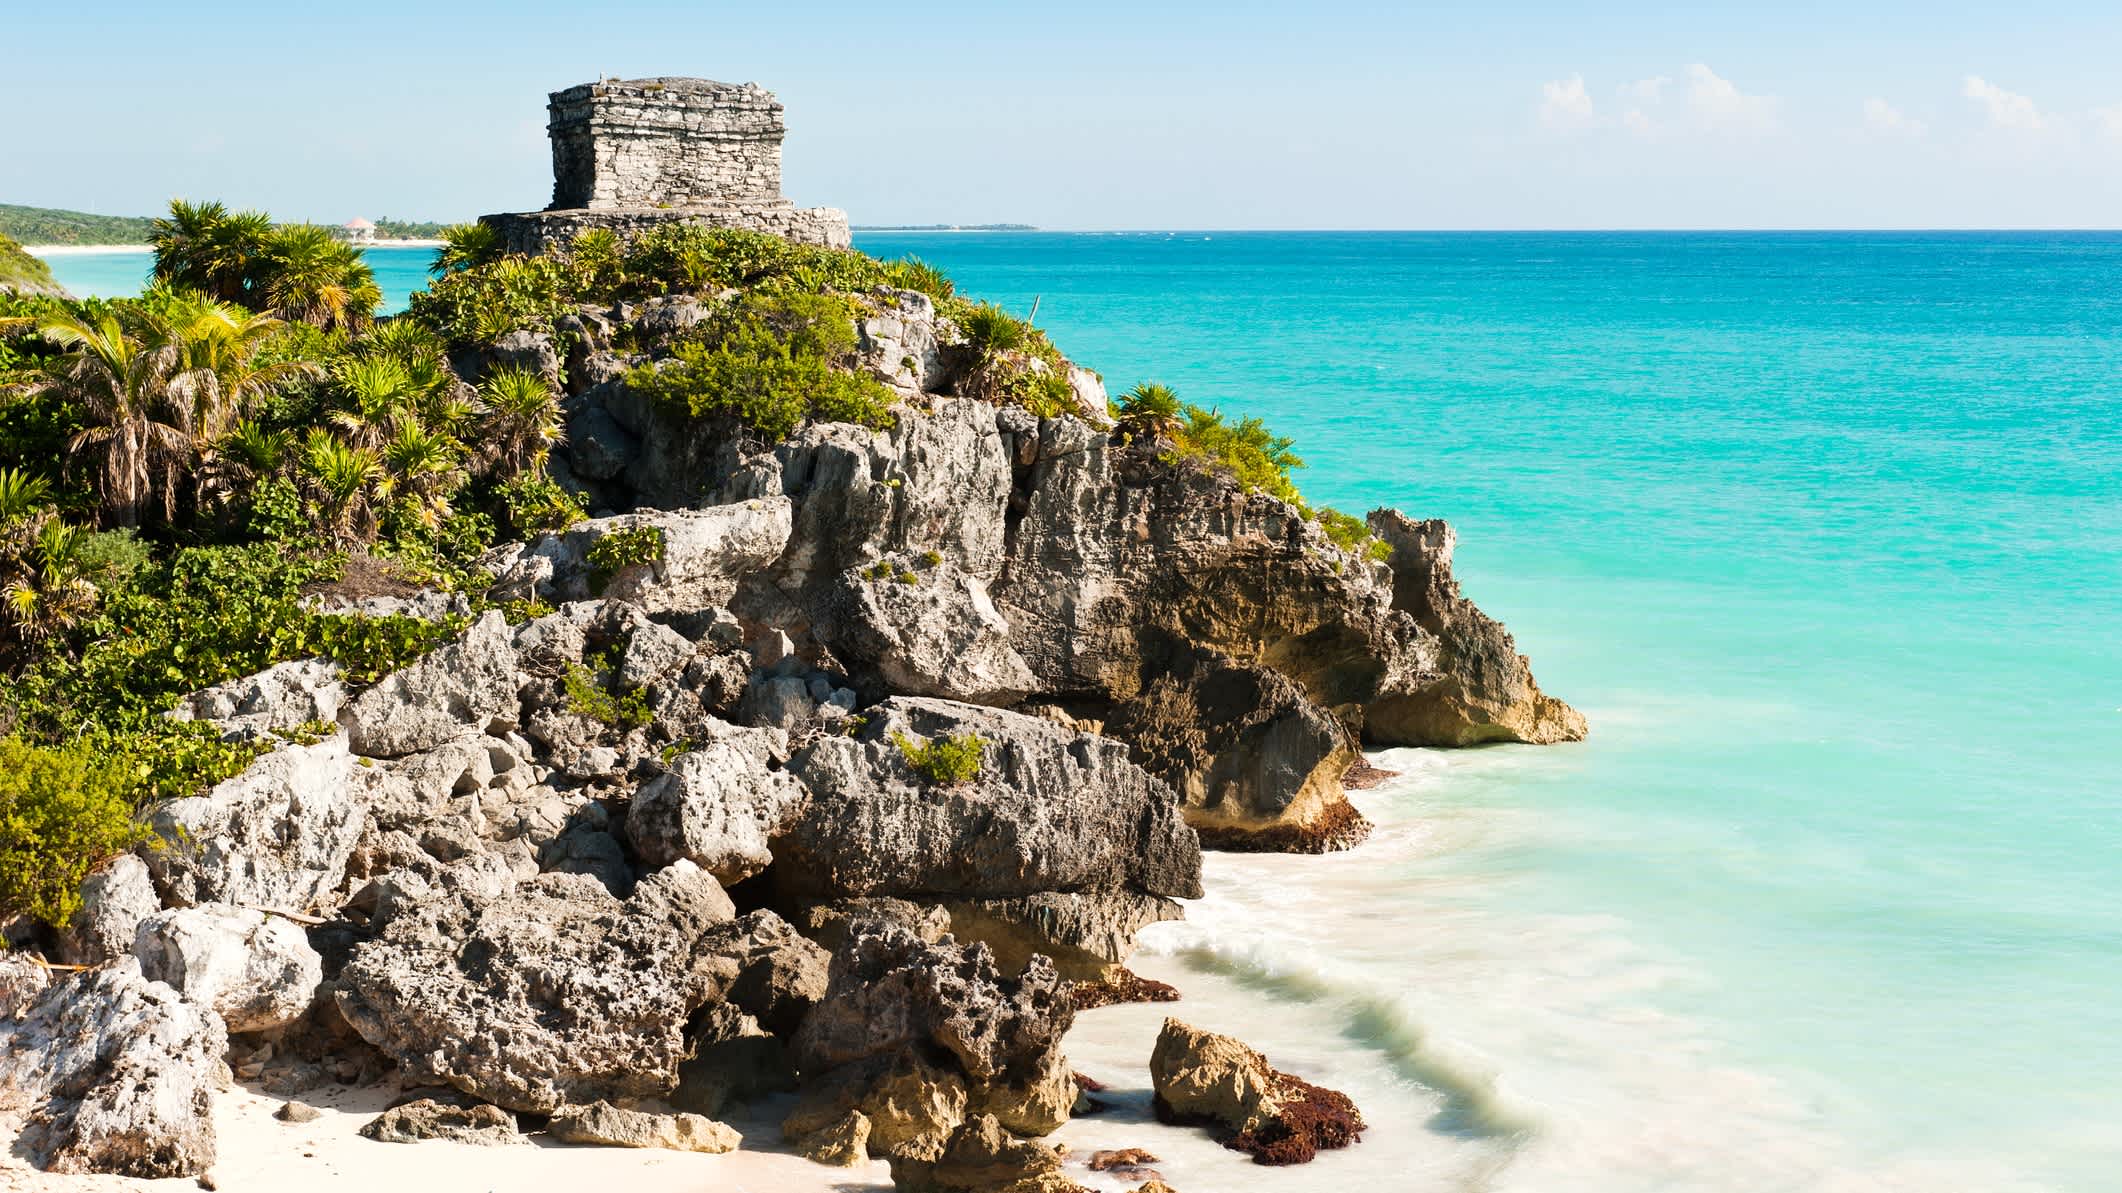 Ruinen der alten Maya-Stadt Tulum in Mexiko, aufgenommen an einem warmen Sommertag mit klarem blauen Himmel und türkisfarbenem Karibikmeer.